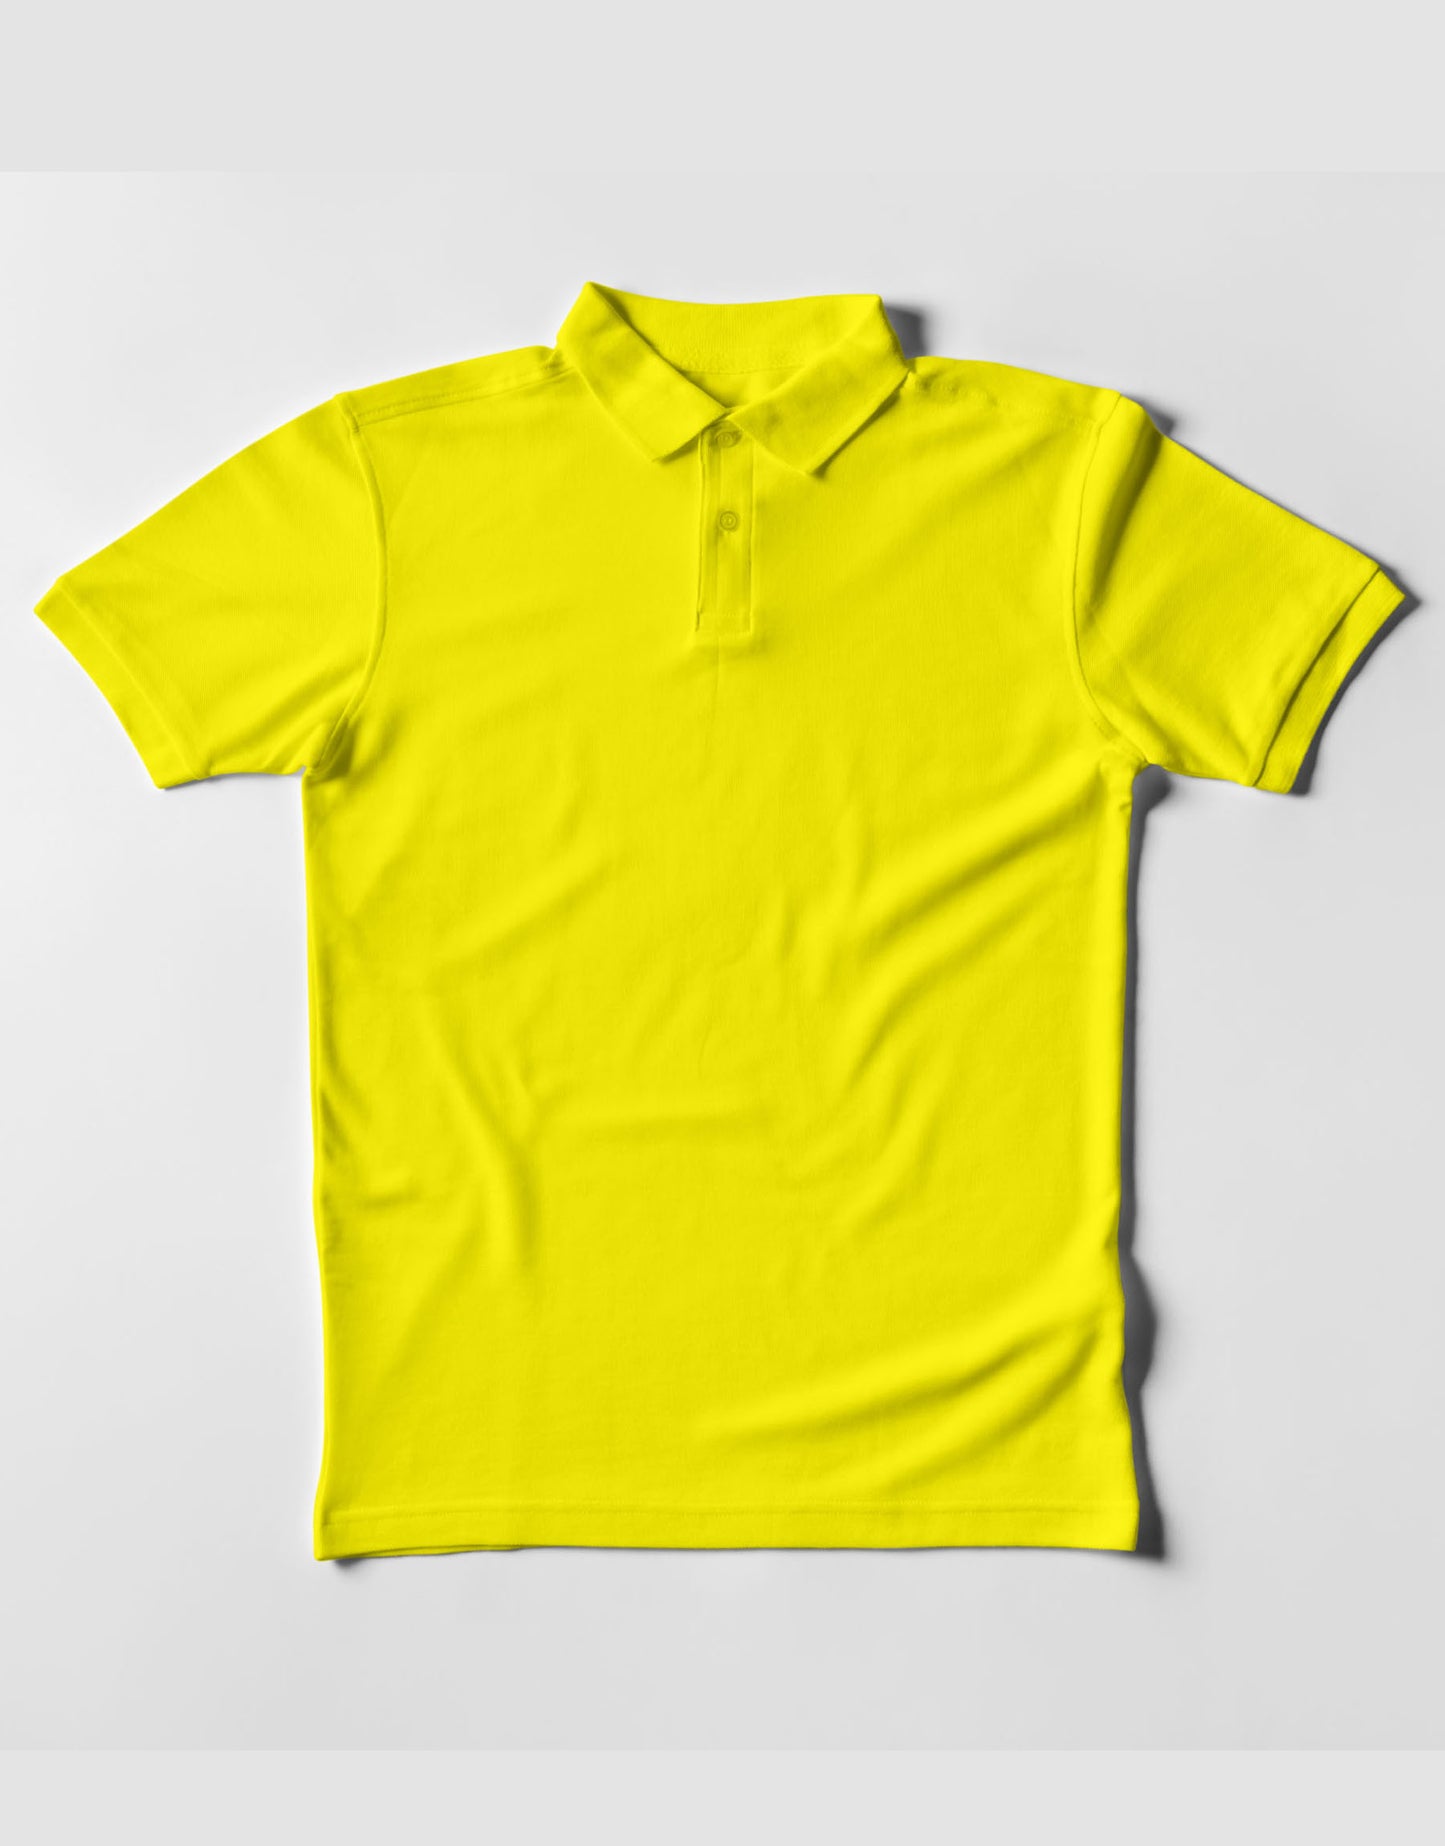 TEEGURUJI Premium Half sleeve Polo T-Shirt